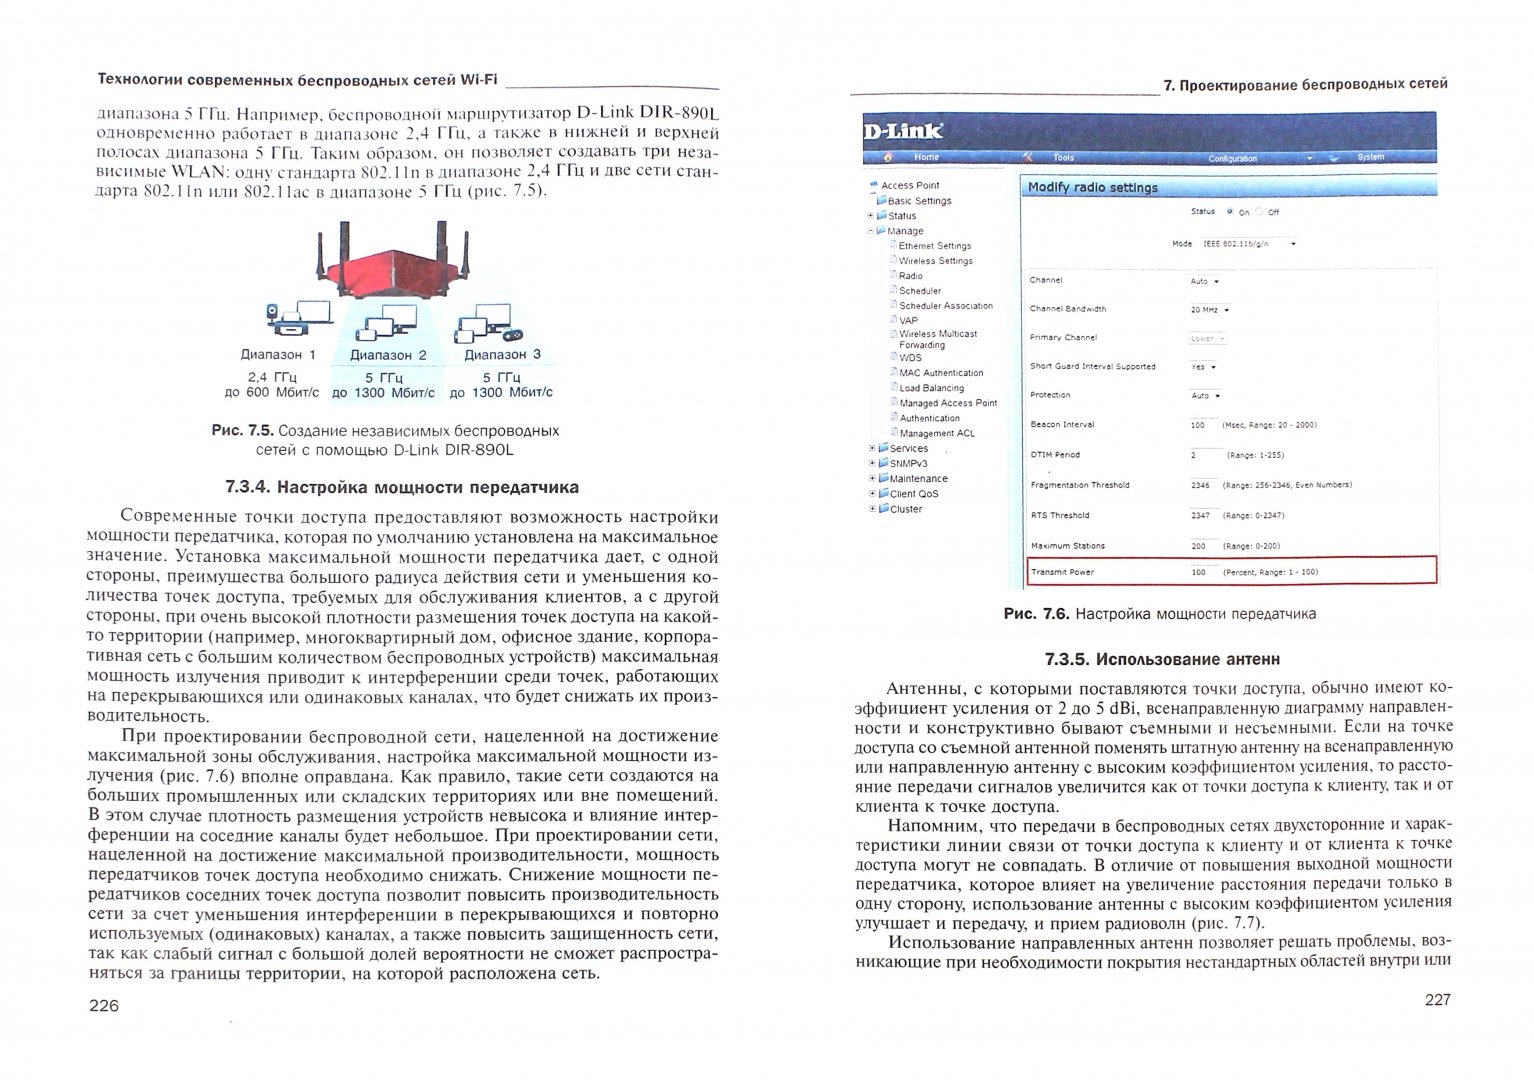 Иллюстрация 9 из 33 для Технология современных беспроводных сетей Wi-Fi - Пролетарский, Смирнова, Ромашкина | Лабиринт - книги. Источник: Лабиринт